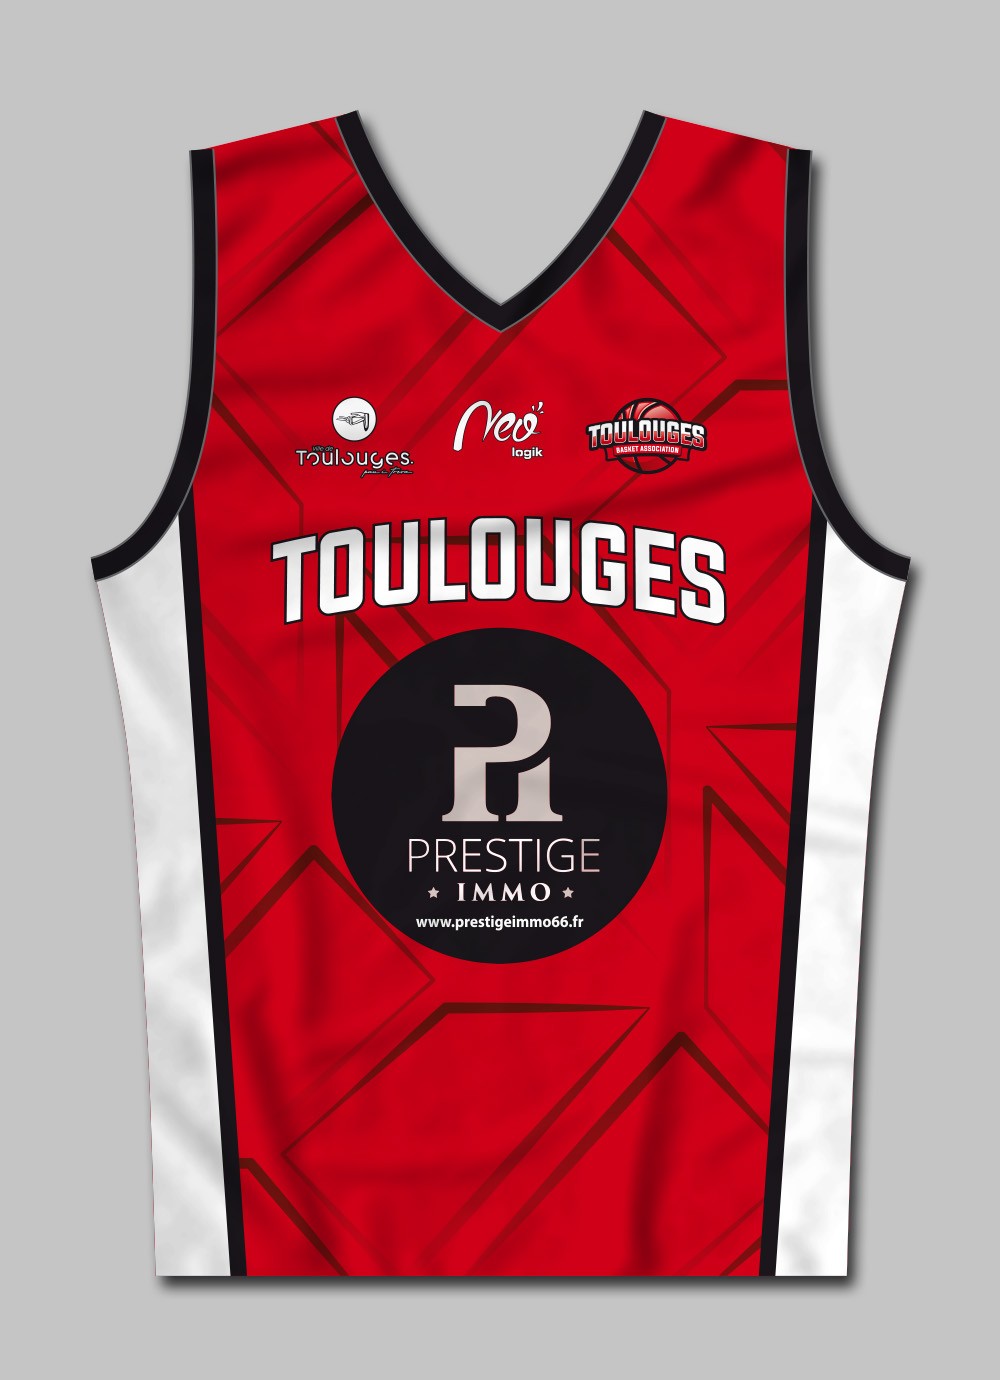 Débardeur basket Séniors homme Toulouges Basket Association 2021-2022 rouge